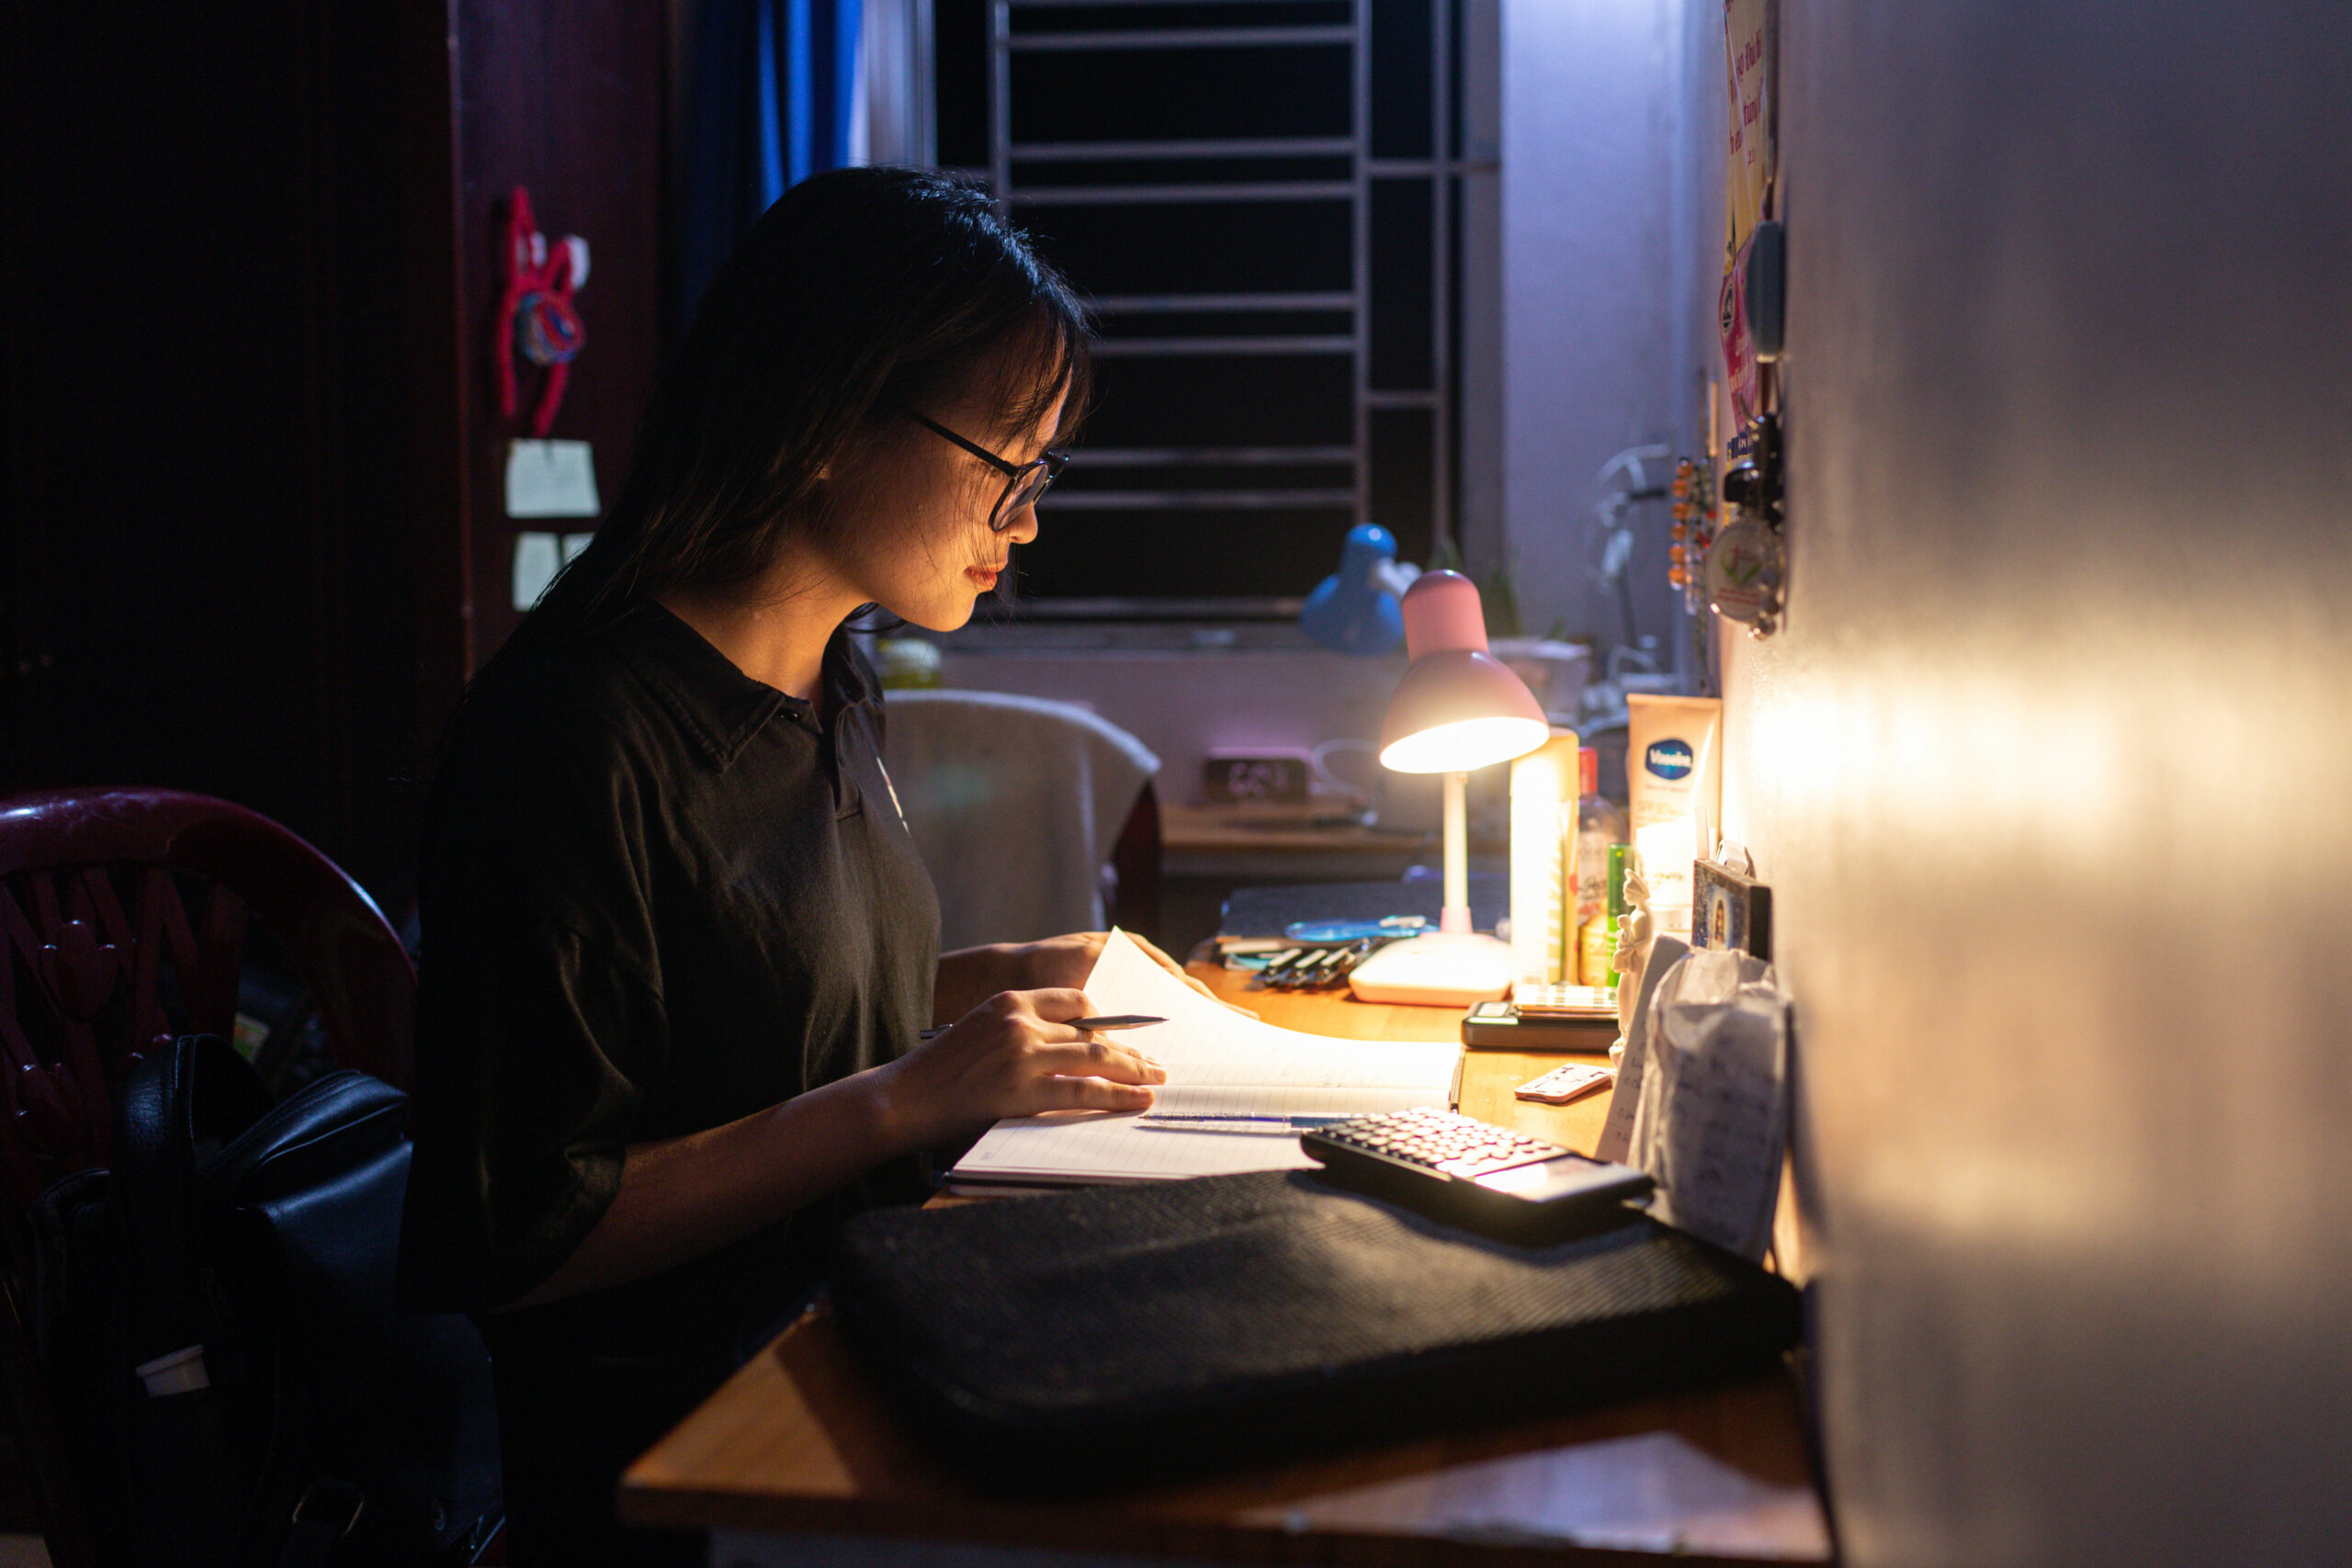 Une jeune étudiante en médecine révise ses examens dans une chambre qu'elle partage avec trois autres camarades.